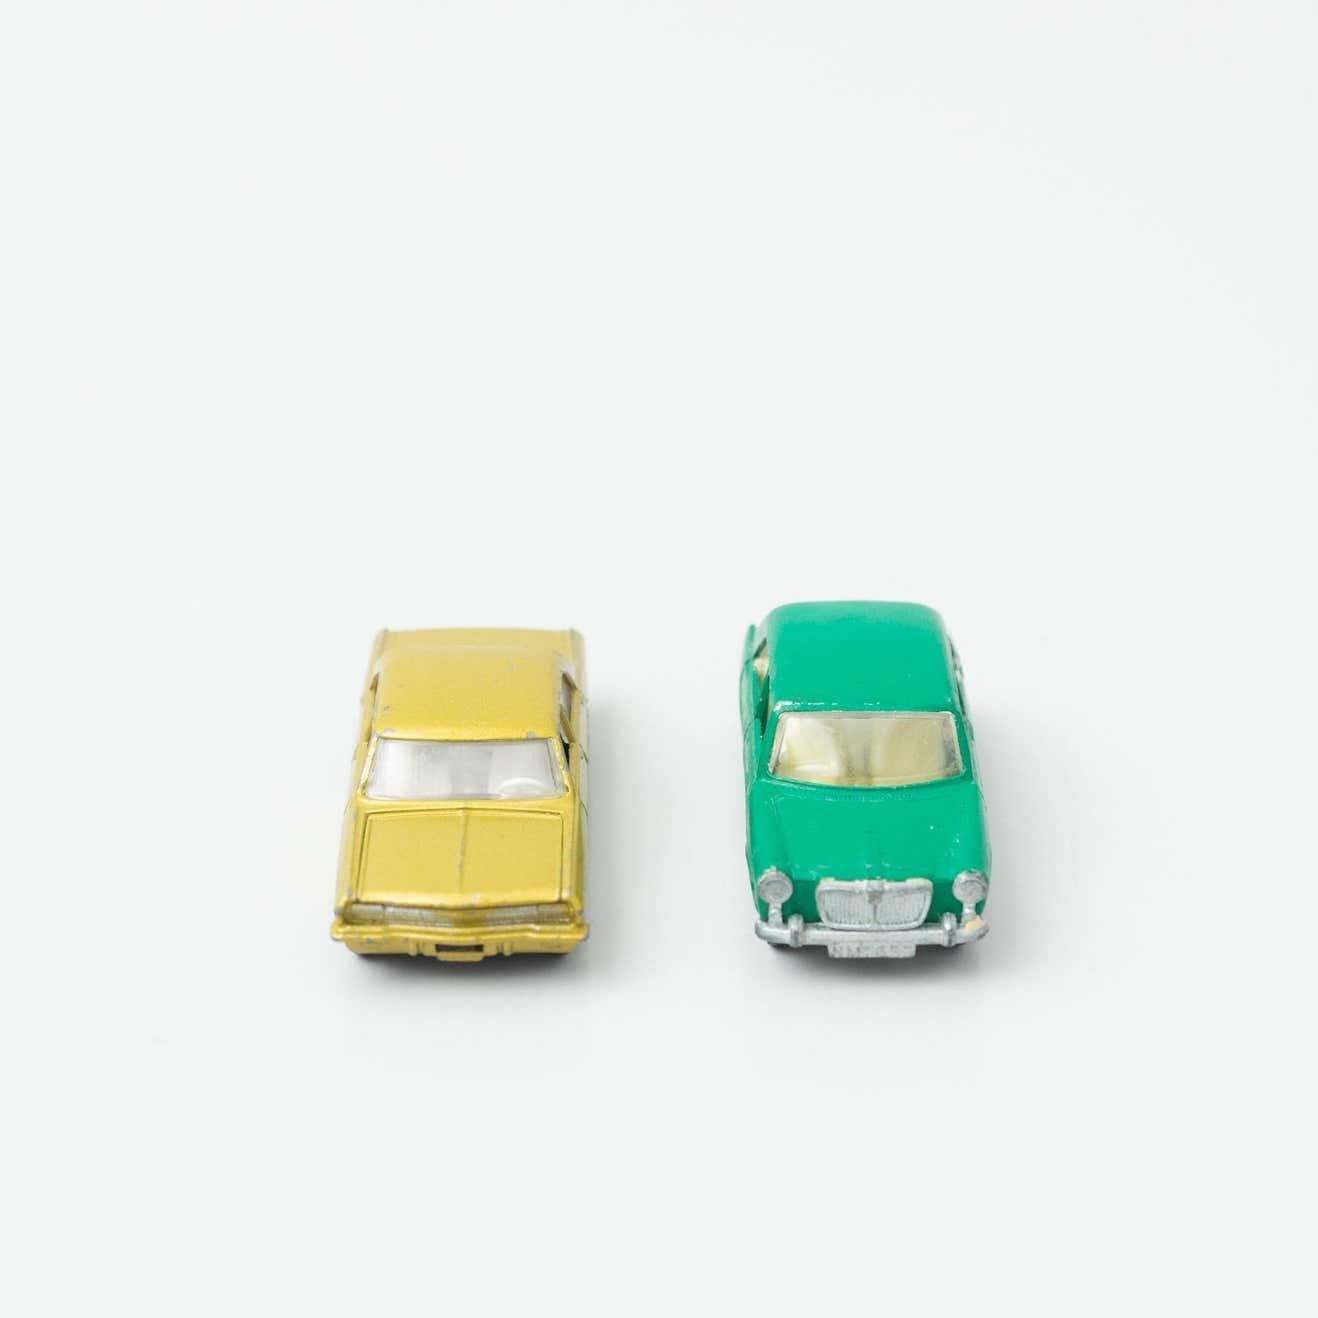 Set aus zwei Opel Oldtimer-Spielzeugen.
Von MatchBox, ca. 1960.

Originaler Zustand mit geringen alters- und gebrauchsbedingten Abnutzungserscheinungen, der eine schöne Patina aufweist.

MATERIALIEN:
Metall
Kunststoff

Abmessungen (jedes Stück):
T